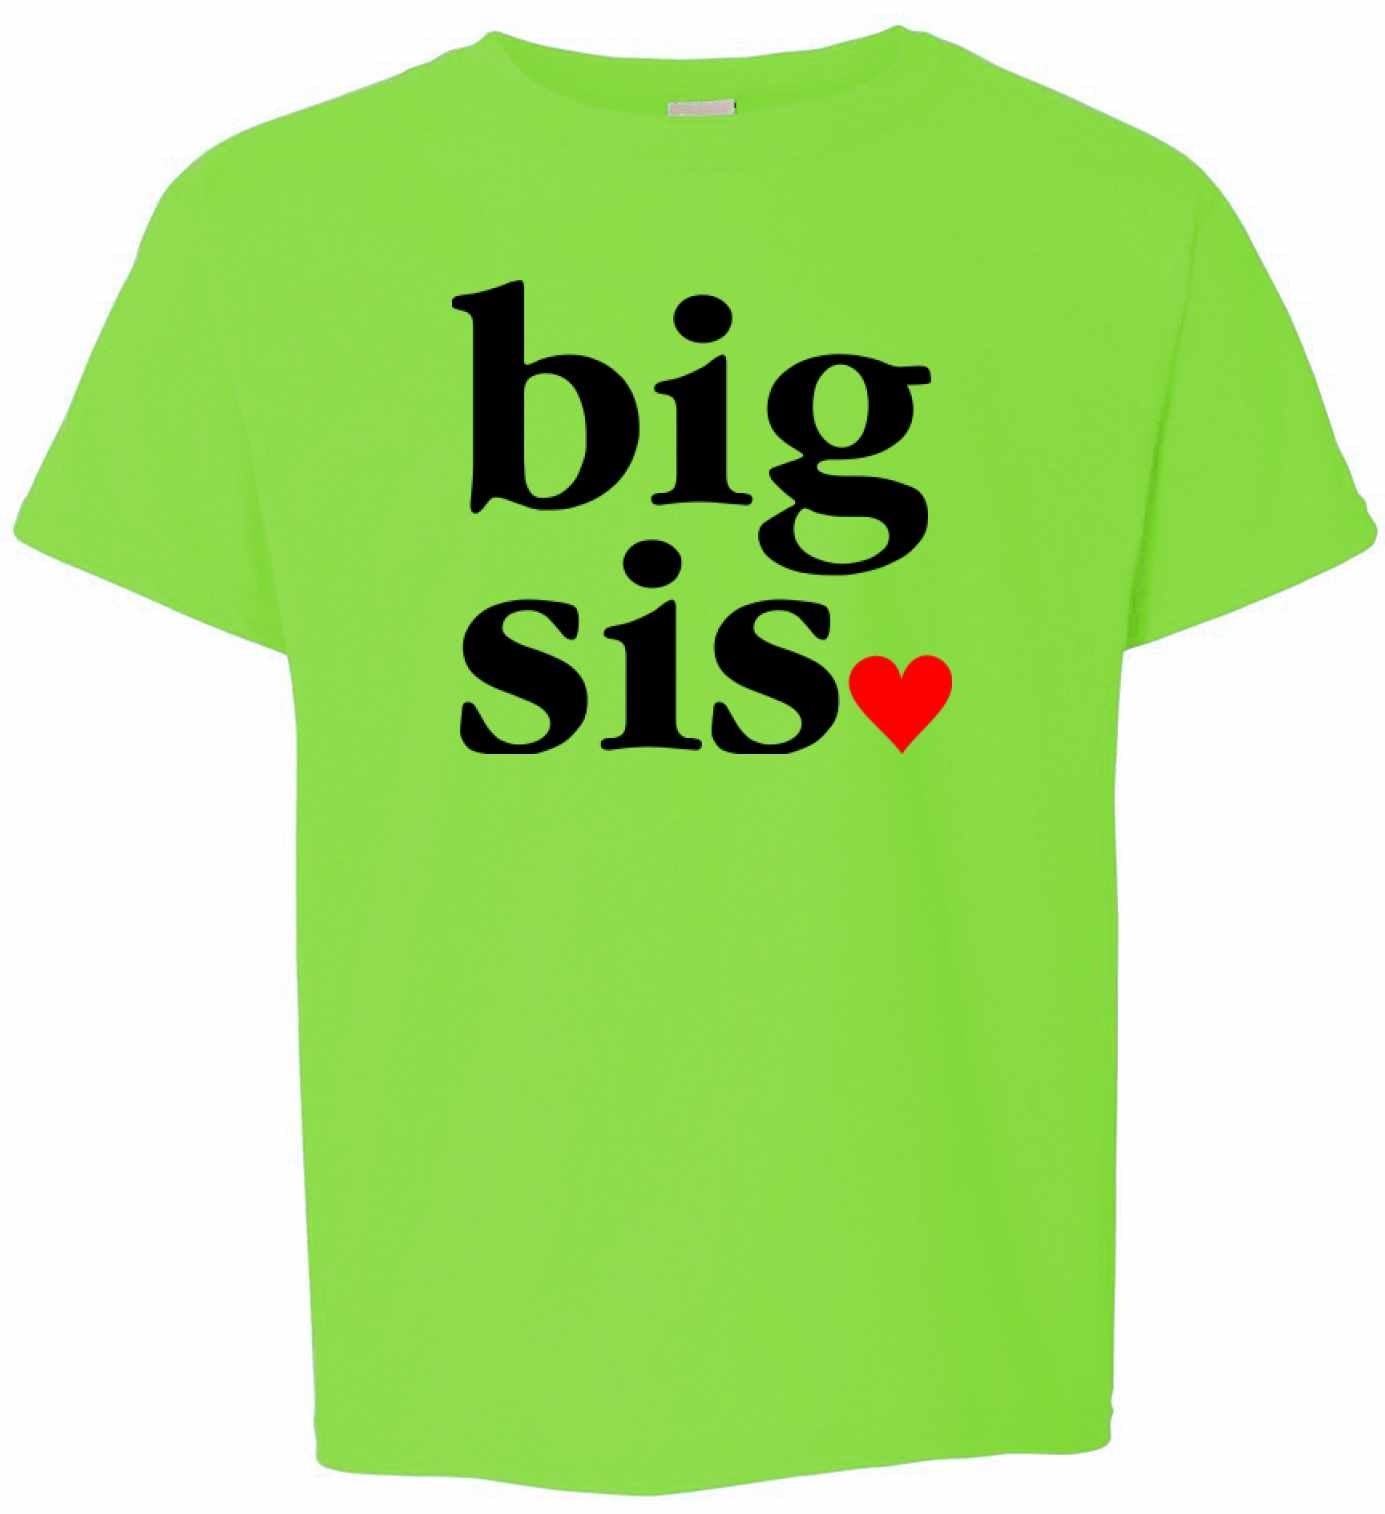 Big Sis, Big Sister on Kids T-Shirt (#985-201)